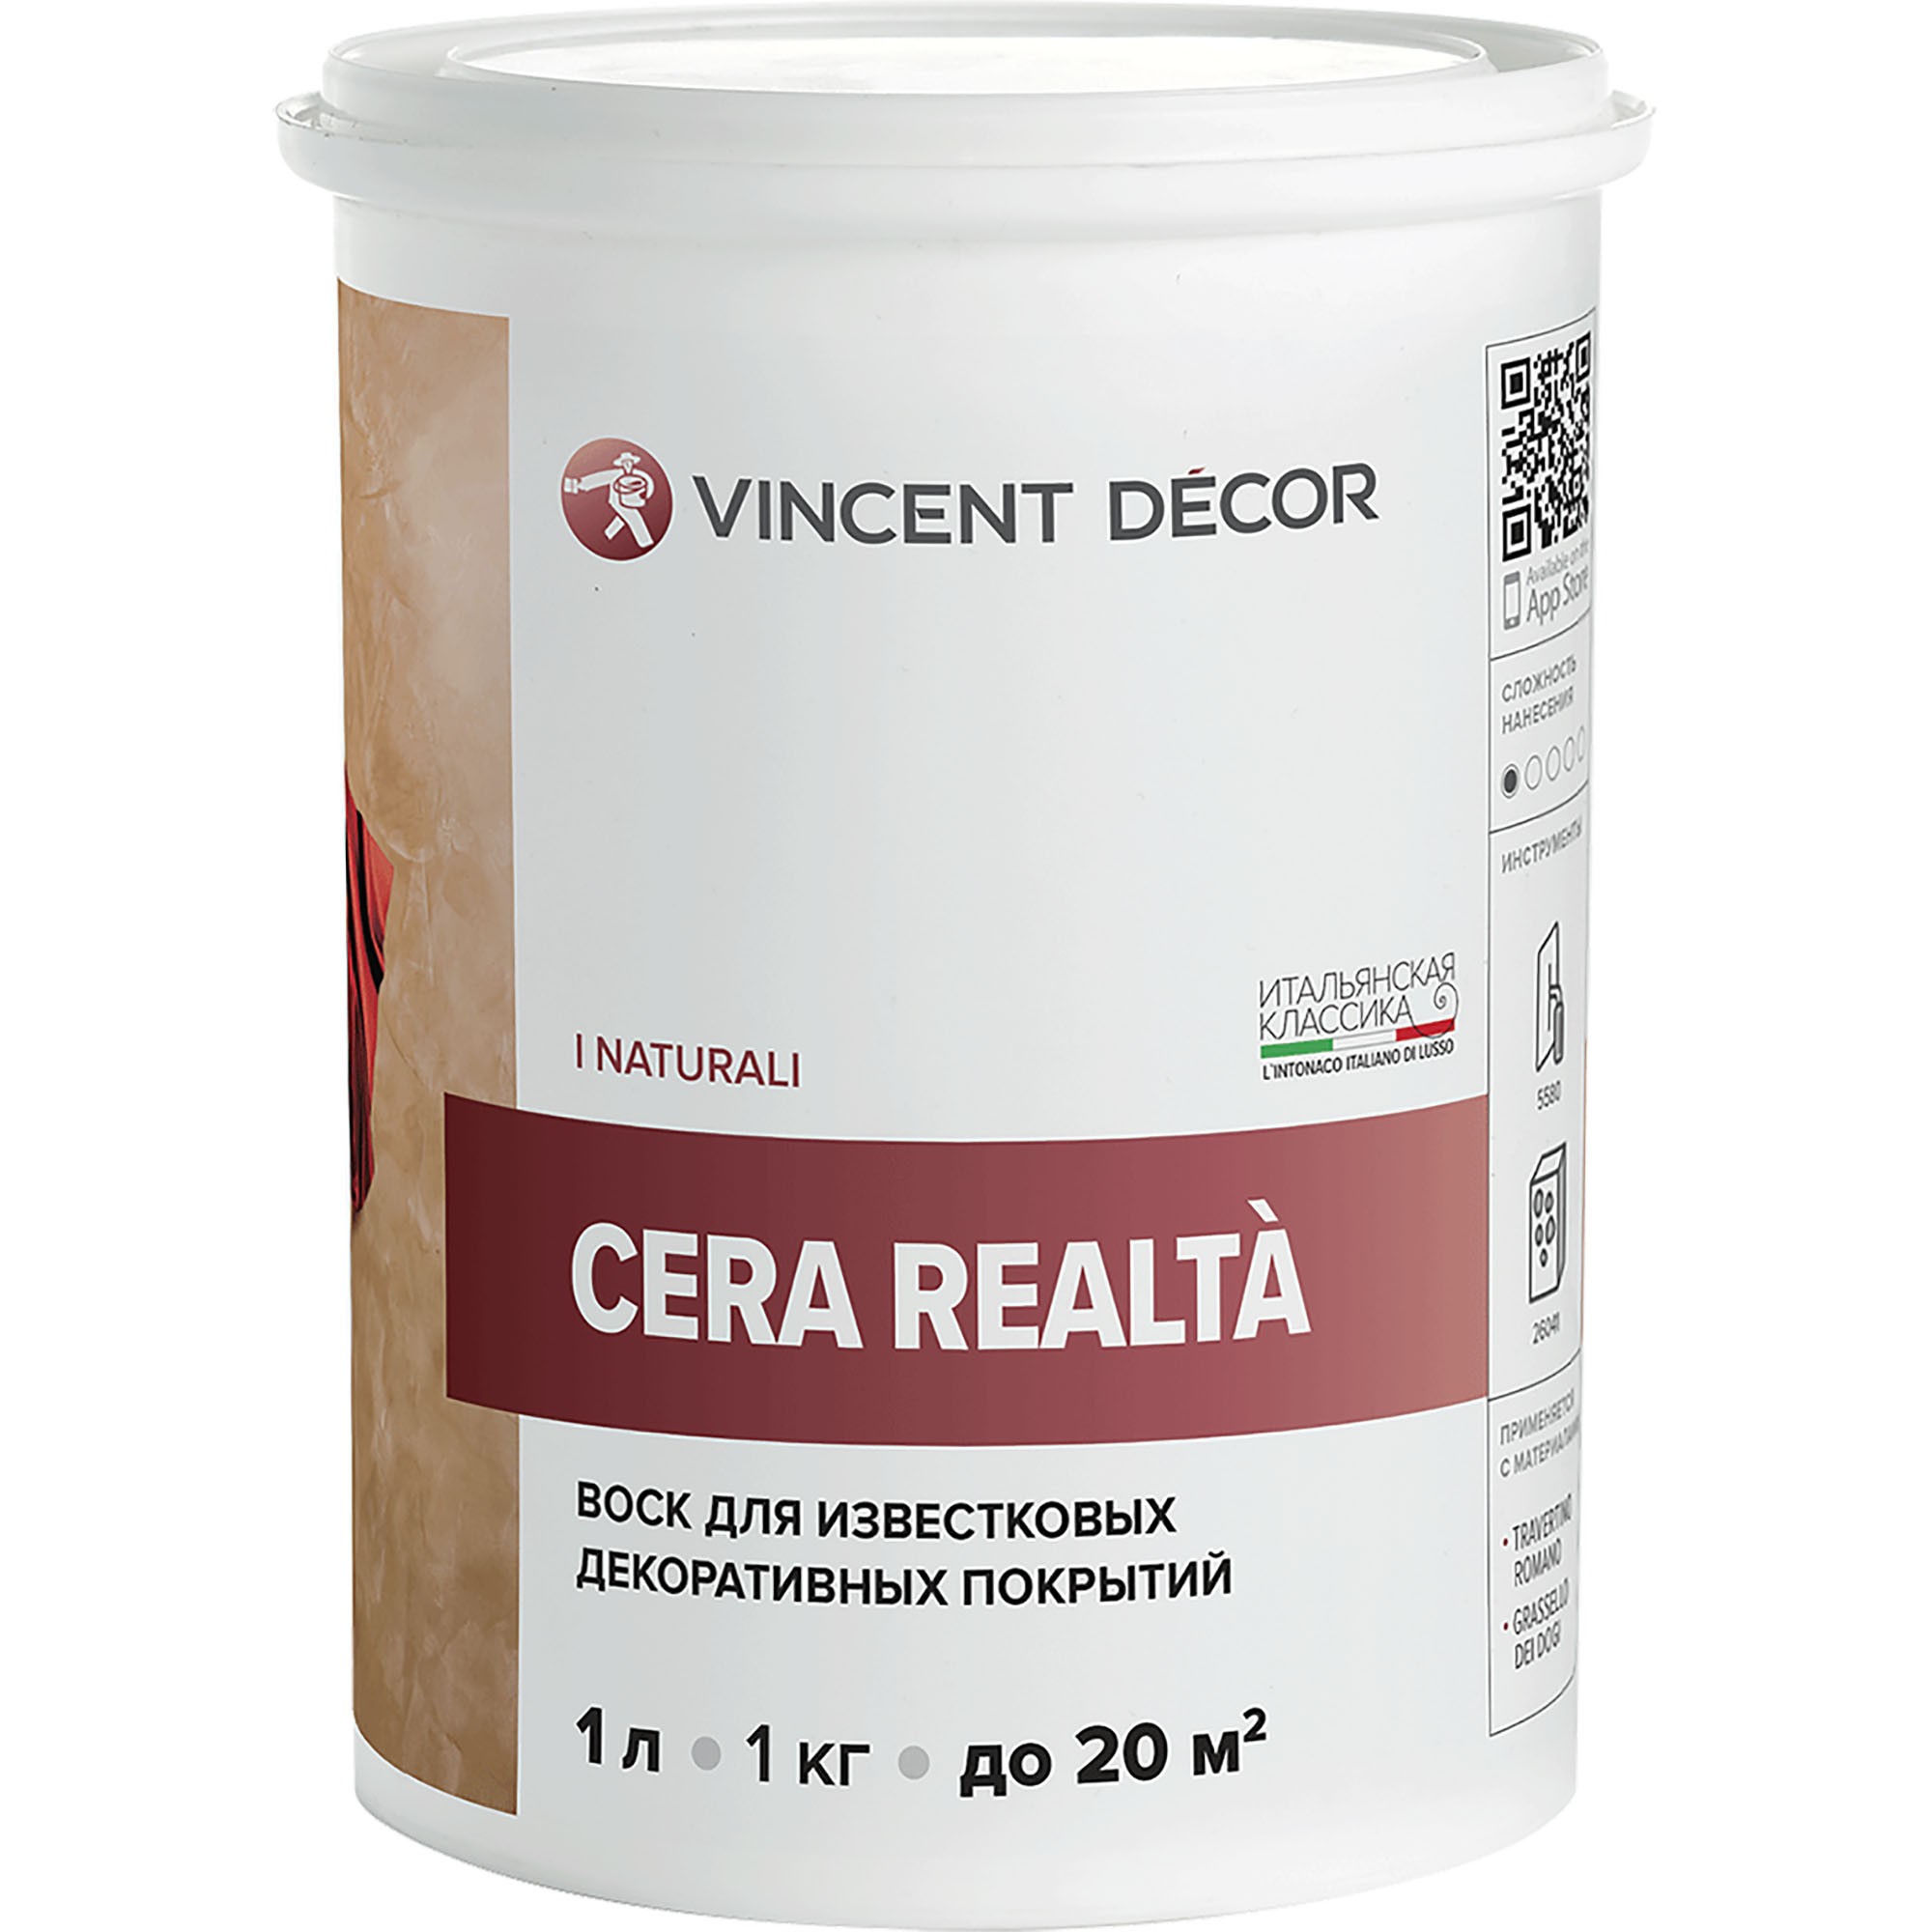 Воск защитный Vincent Decor Cera Realta для известковых декоративных покрытий 1 л защитный воск для венецианской штукатурки vincent decor